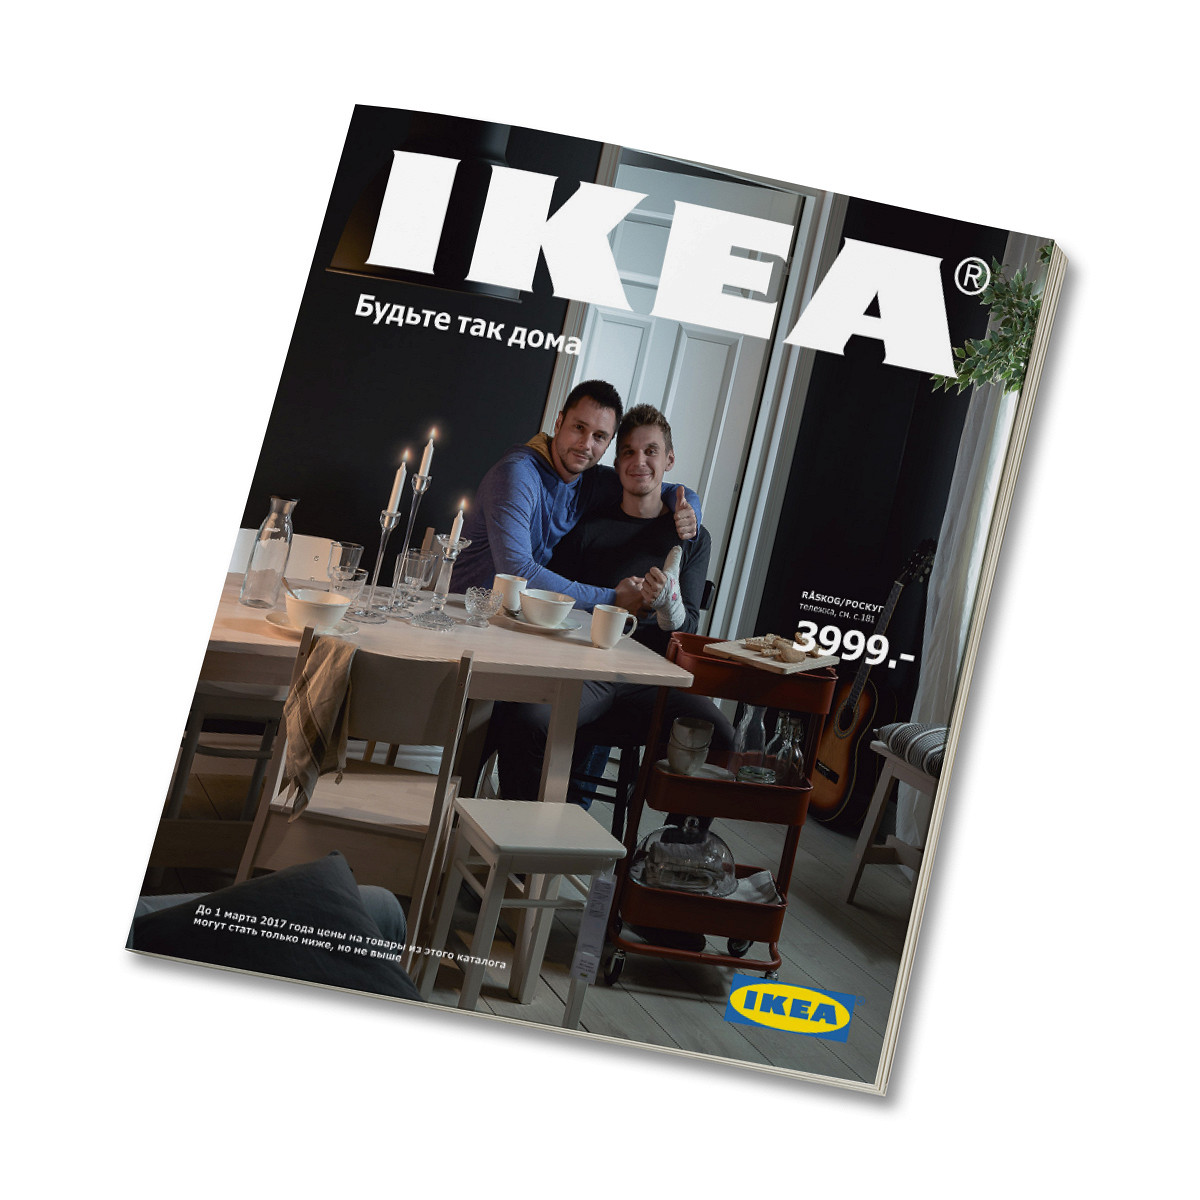 Как рекламная кампания IKEA внезапно стала акцией в поддержку ЛГБТ - Афиша  Daily